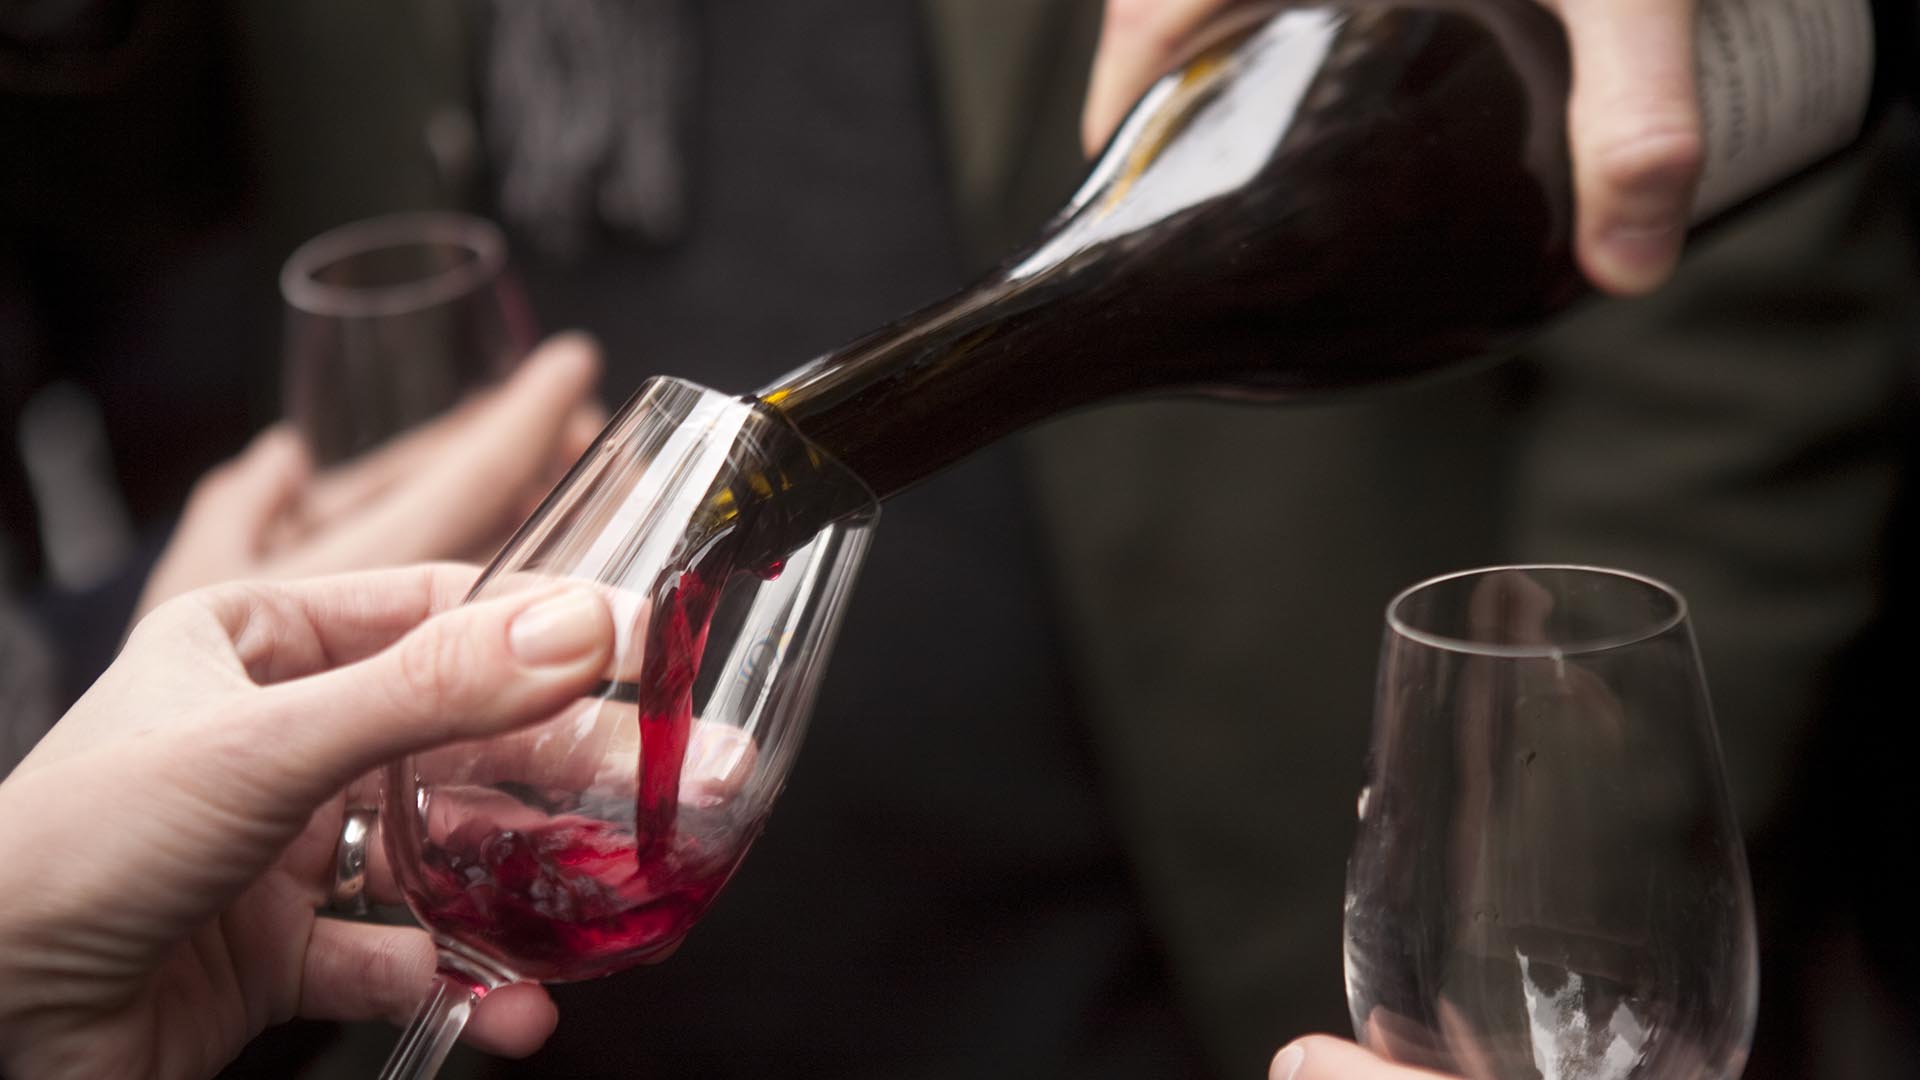 Distintos estudios de comportamiento de salud han demostrado los beneficios del consumo moderado de vino tinto, no más de dos vasos al día
(Getty Images)